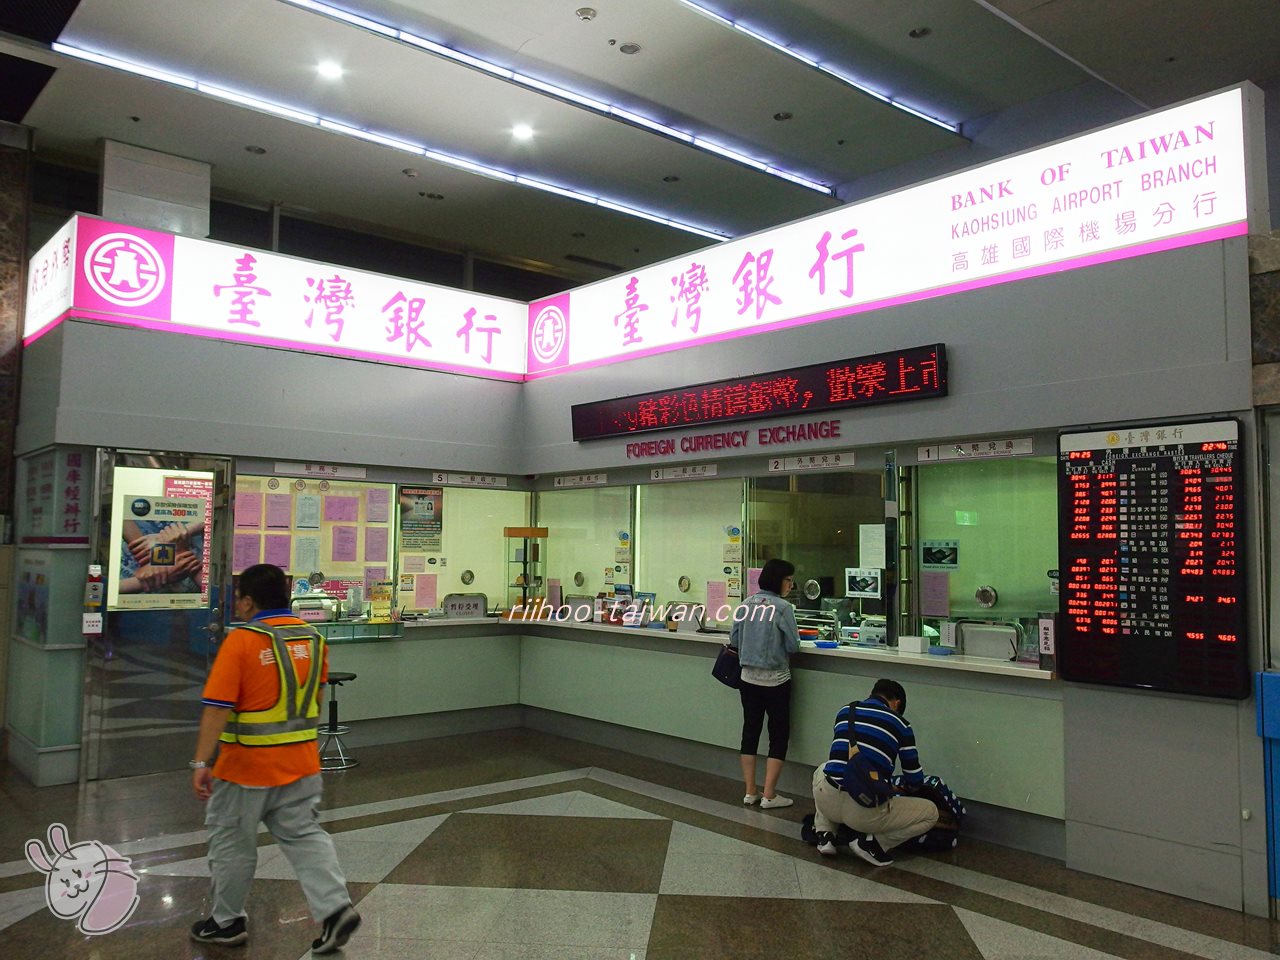 高雄空港の台湾銀行カウンター